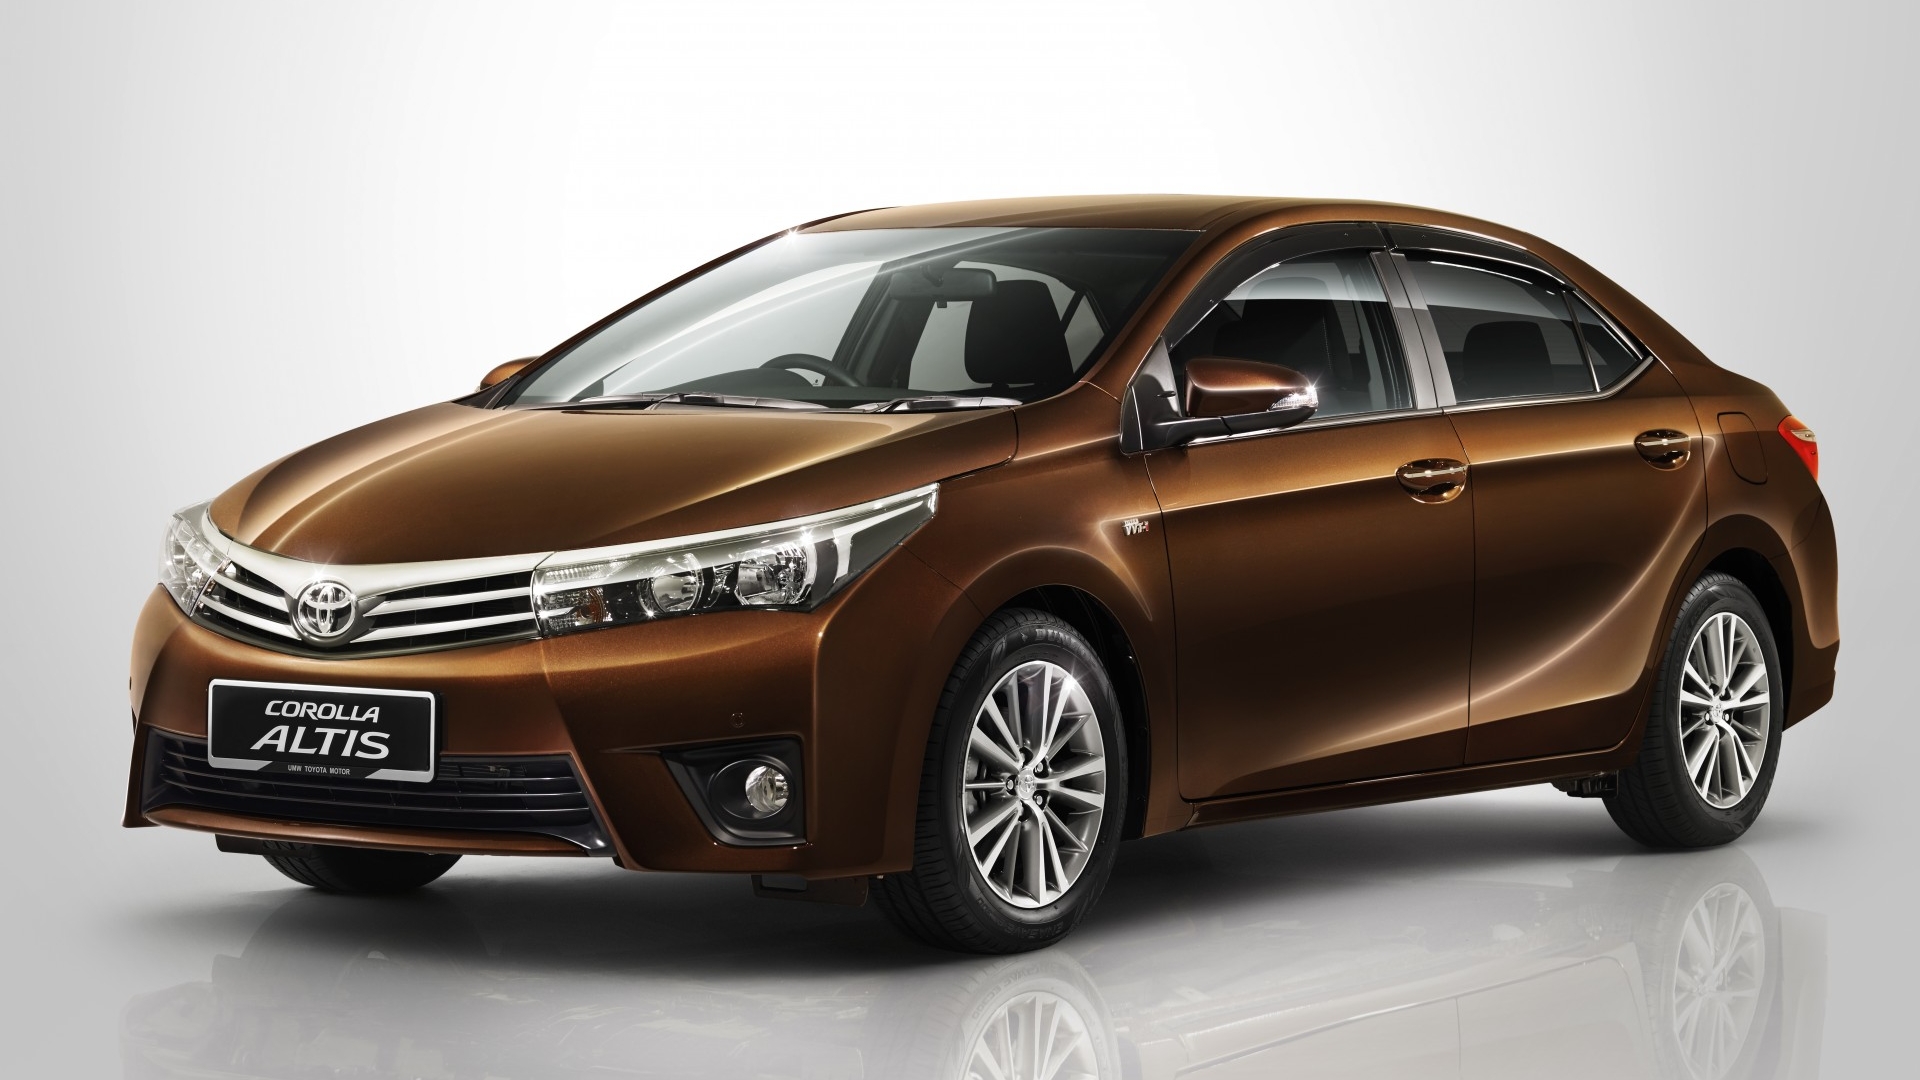 Ô tô giá rẻ Toyota Altis 2015 trở nên hầm hố và hiện đại hơn trước